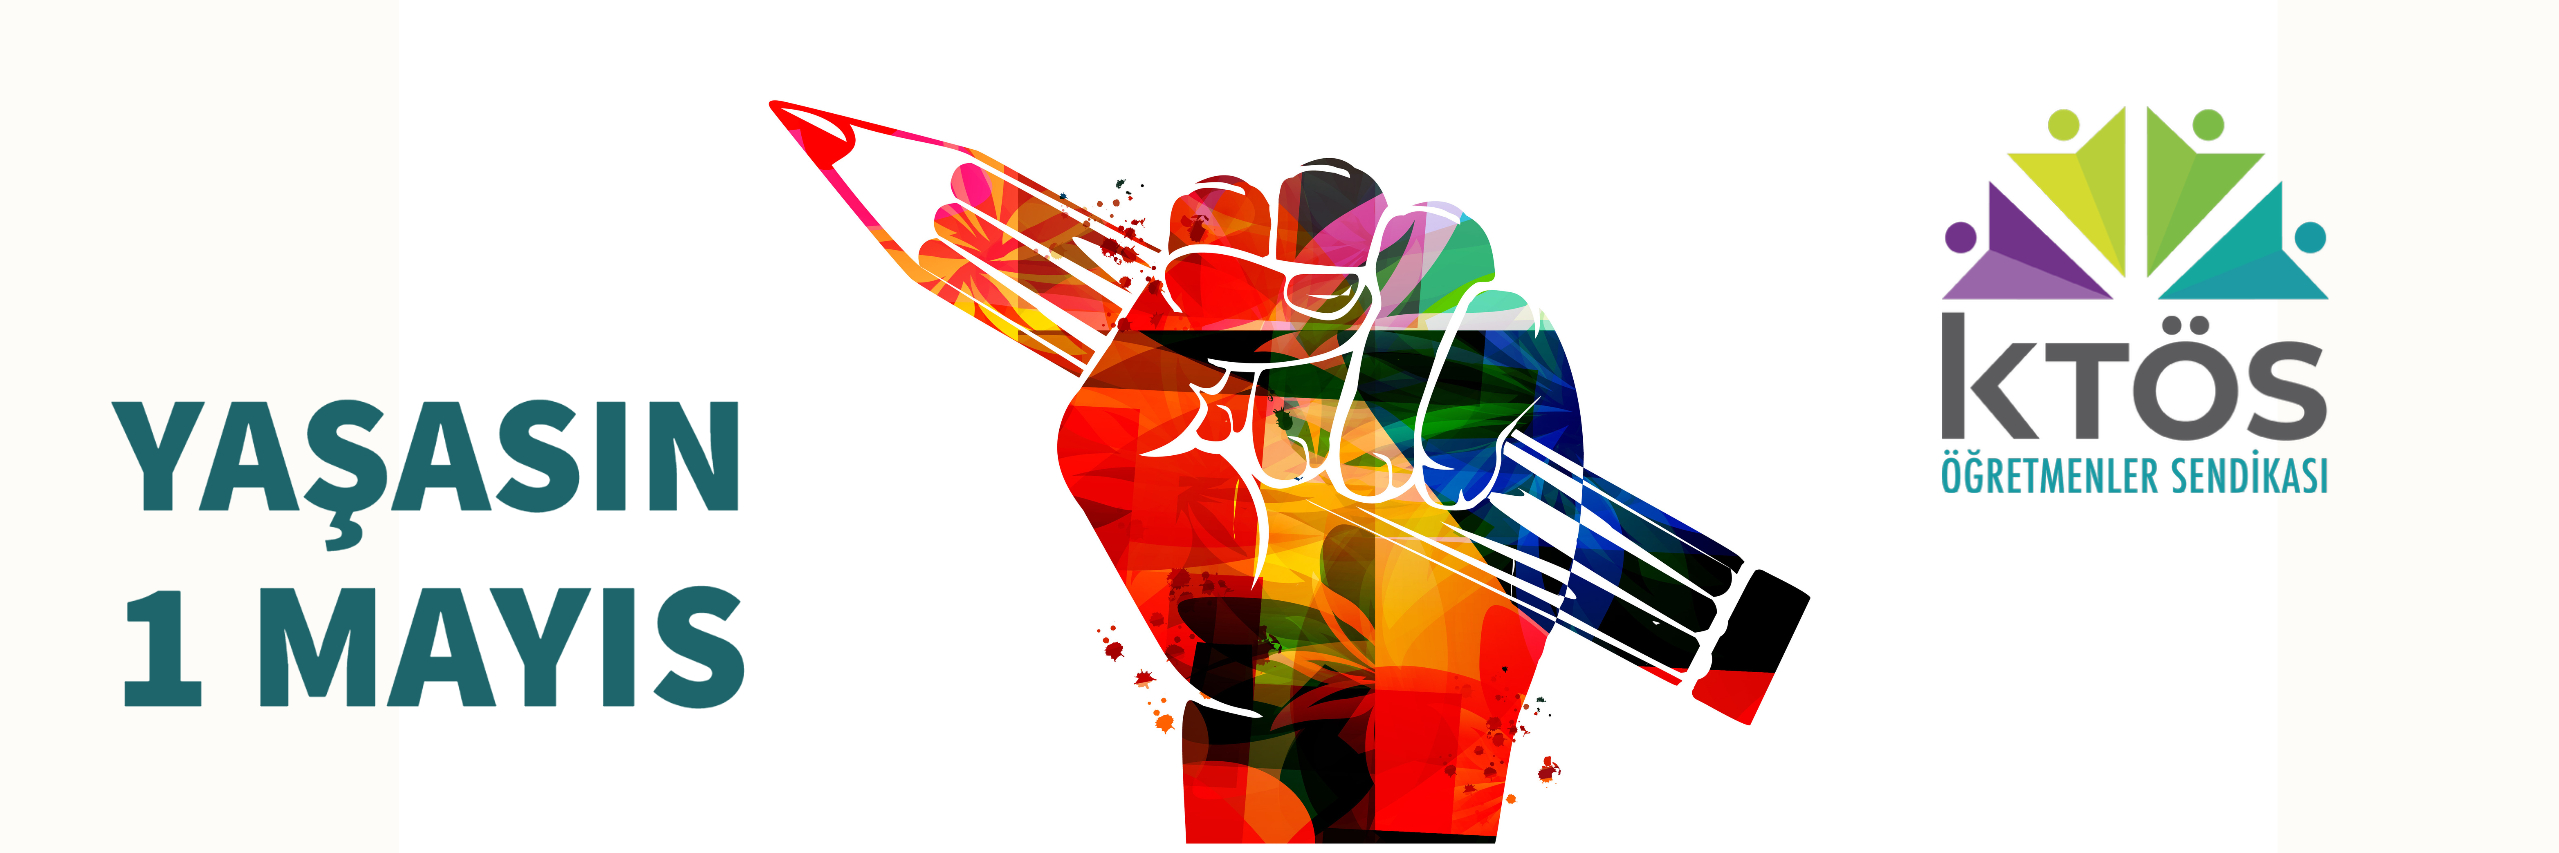 Yaşasın 1 Mayıs: Sosyal adalet için mücadeleyi birlikte sürdürüyoruz!